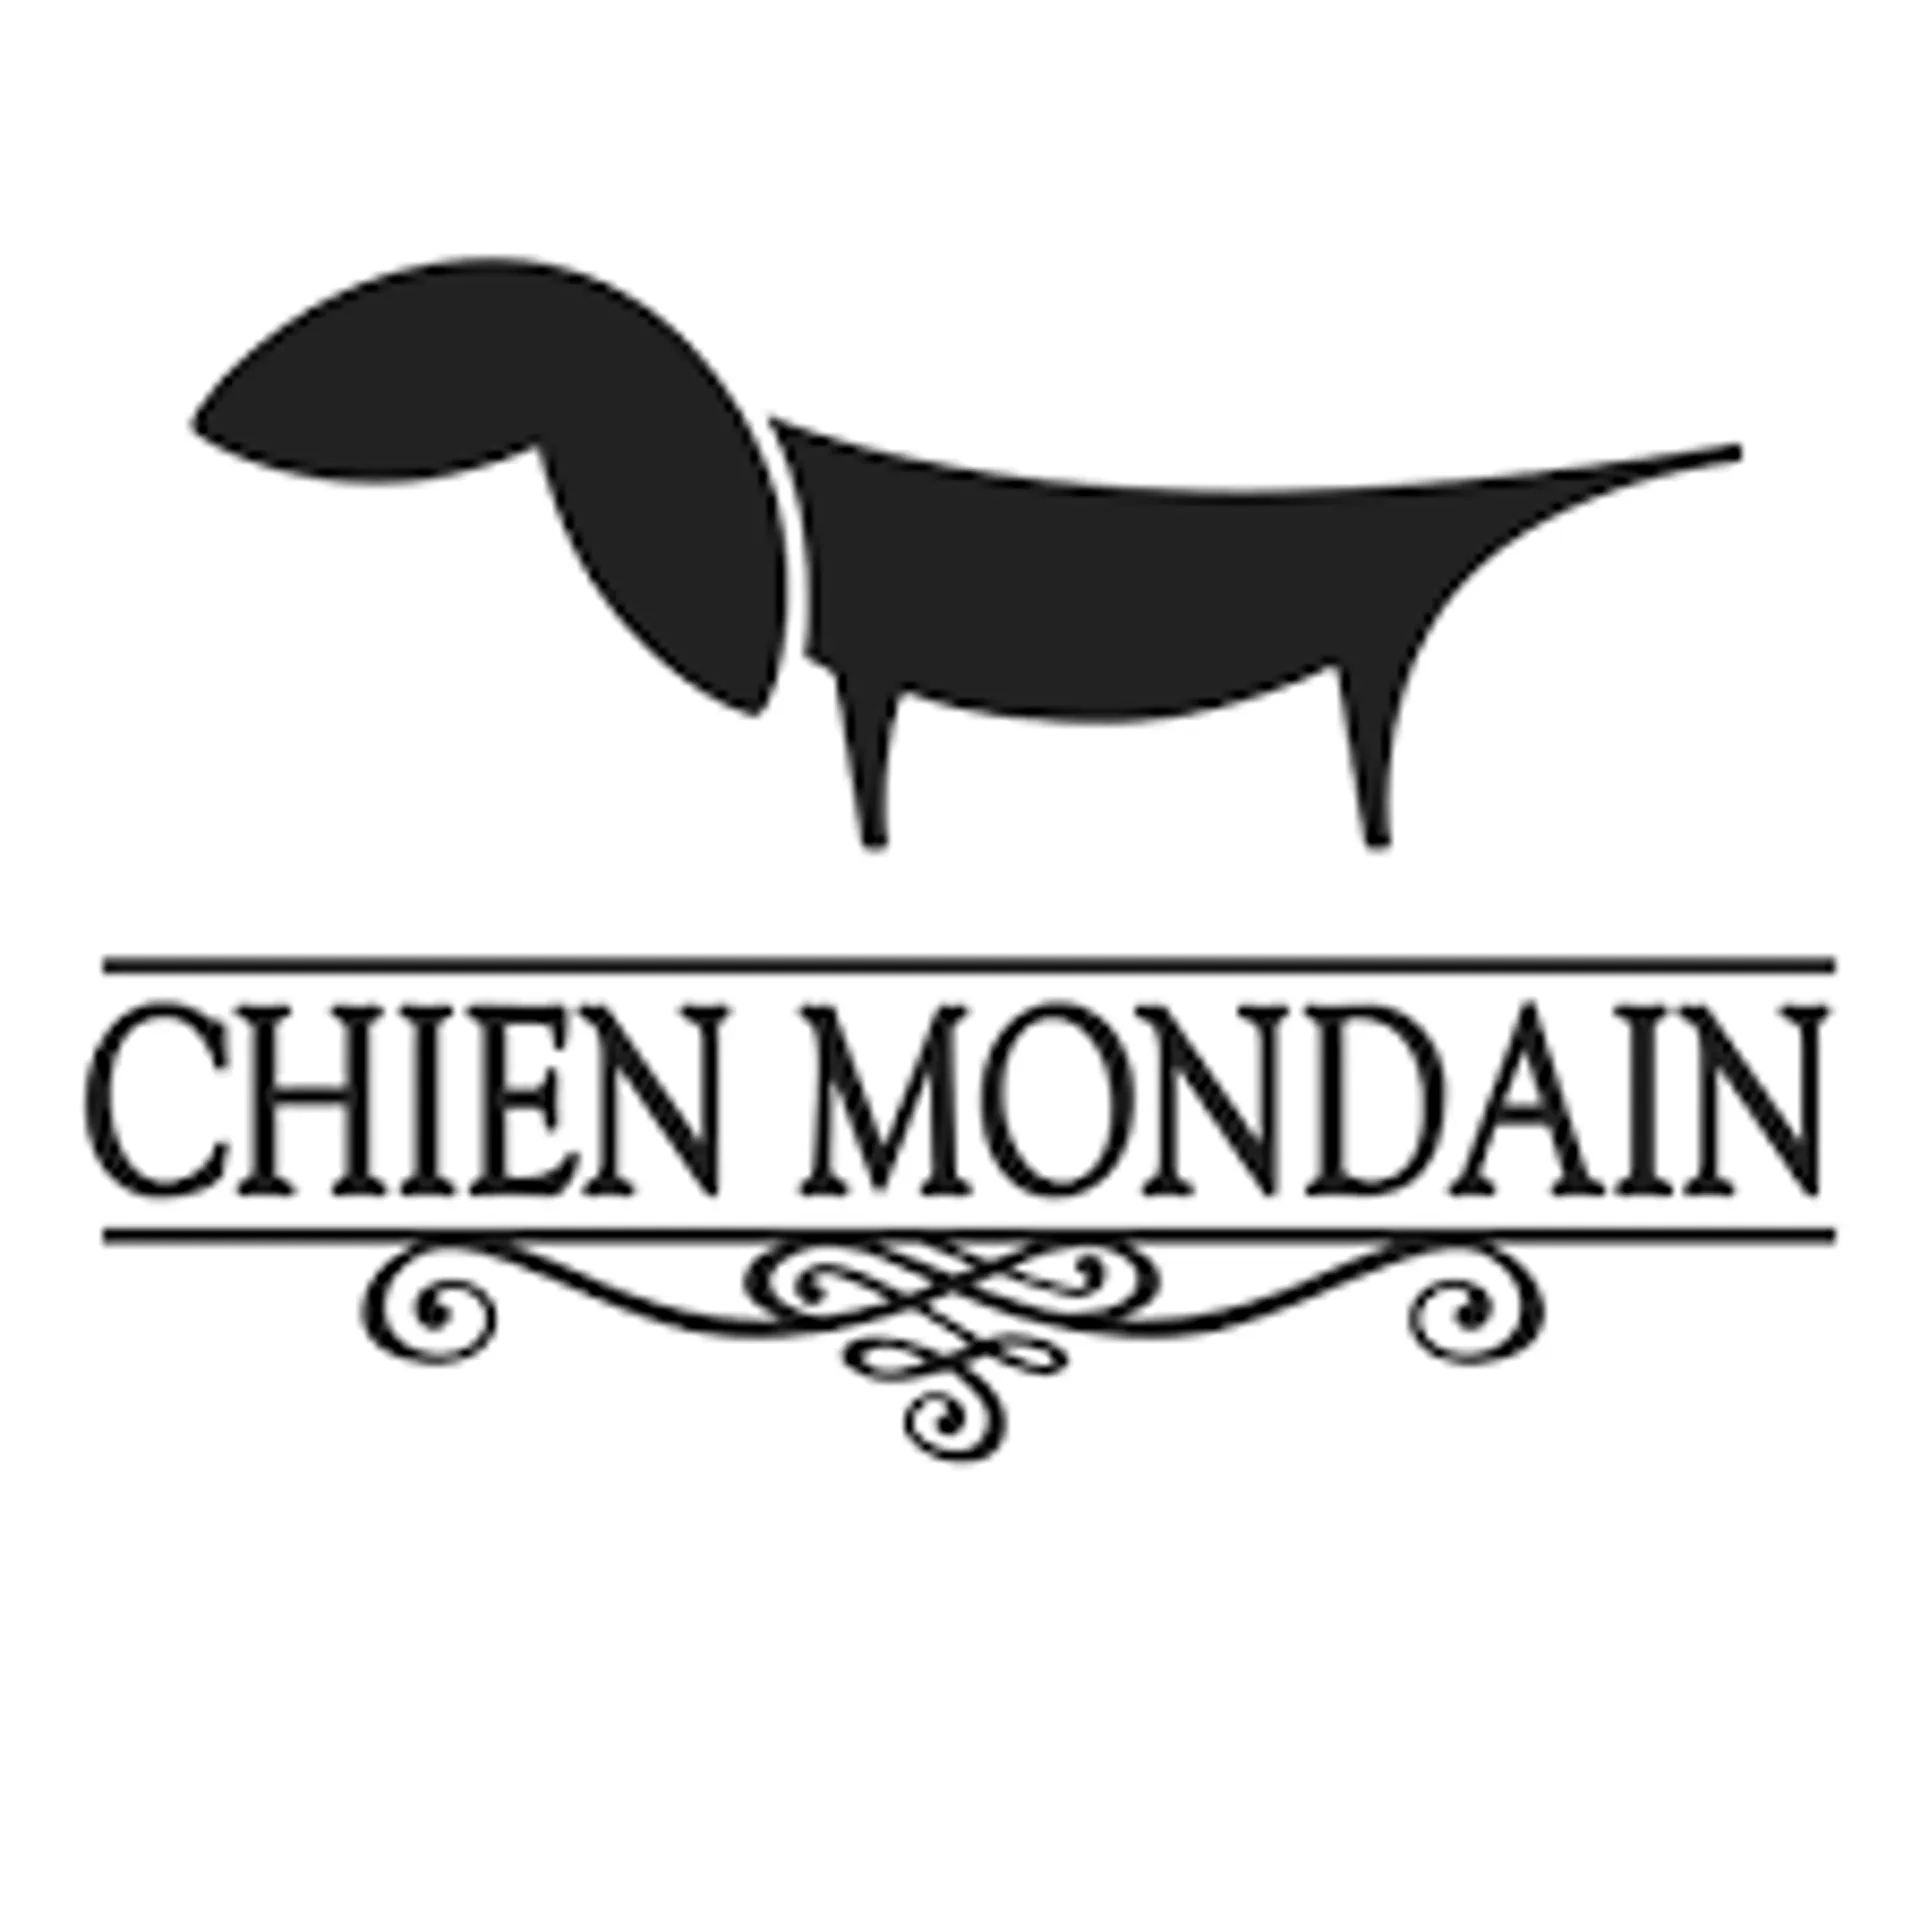 CHIEN MONDAIN logo de circulaire